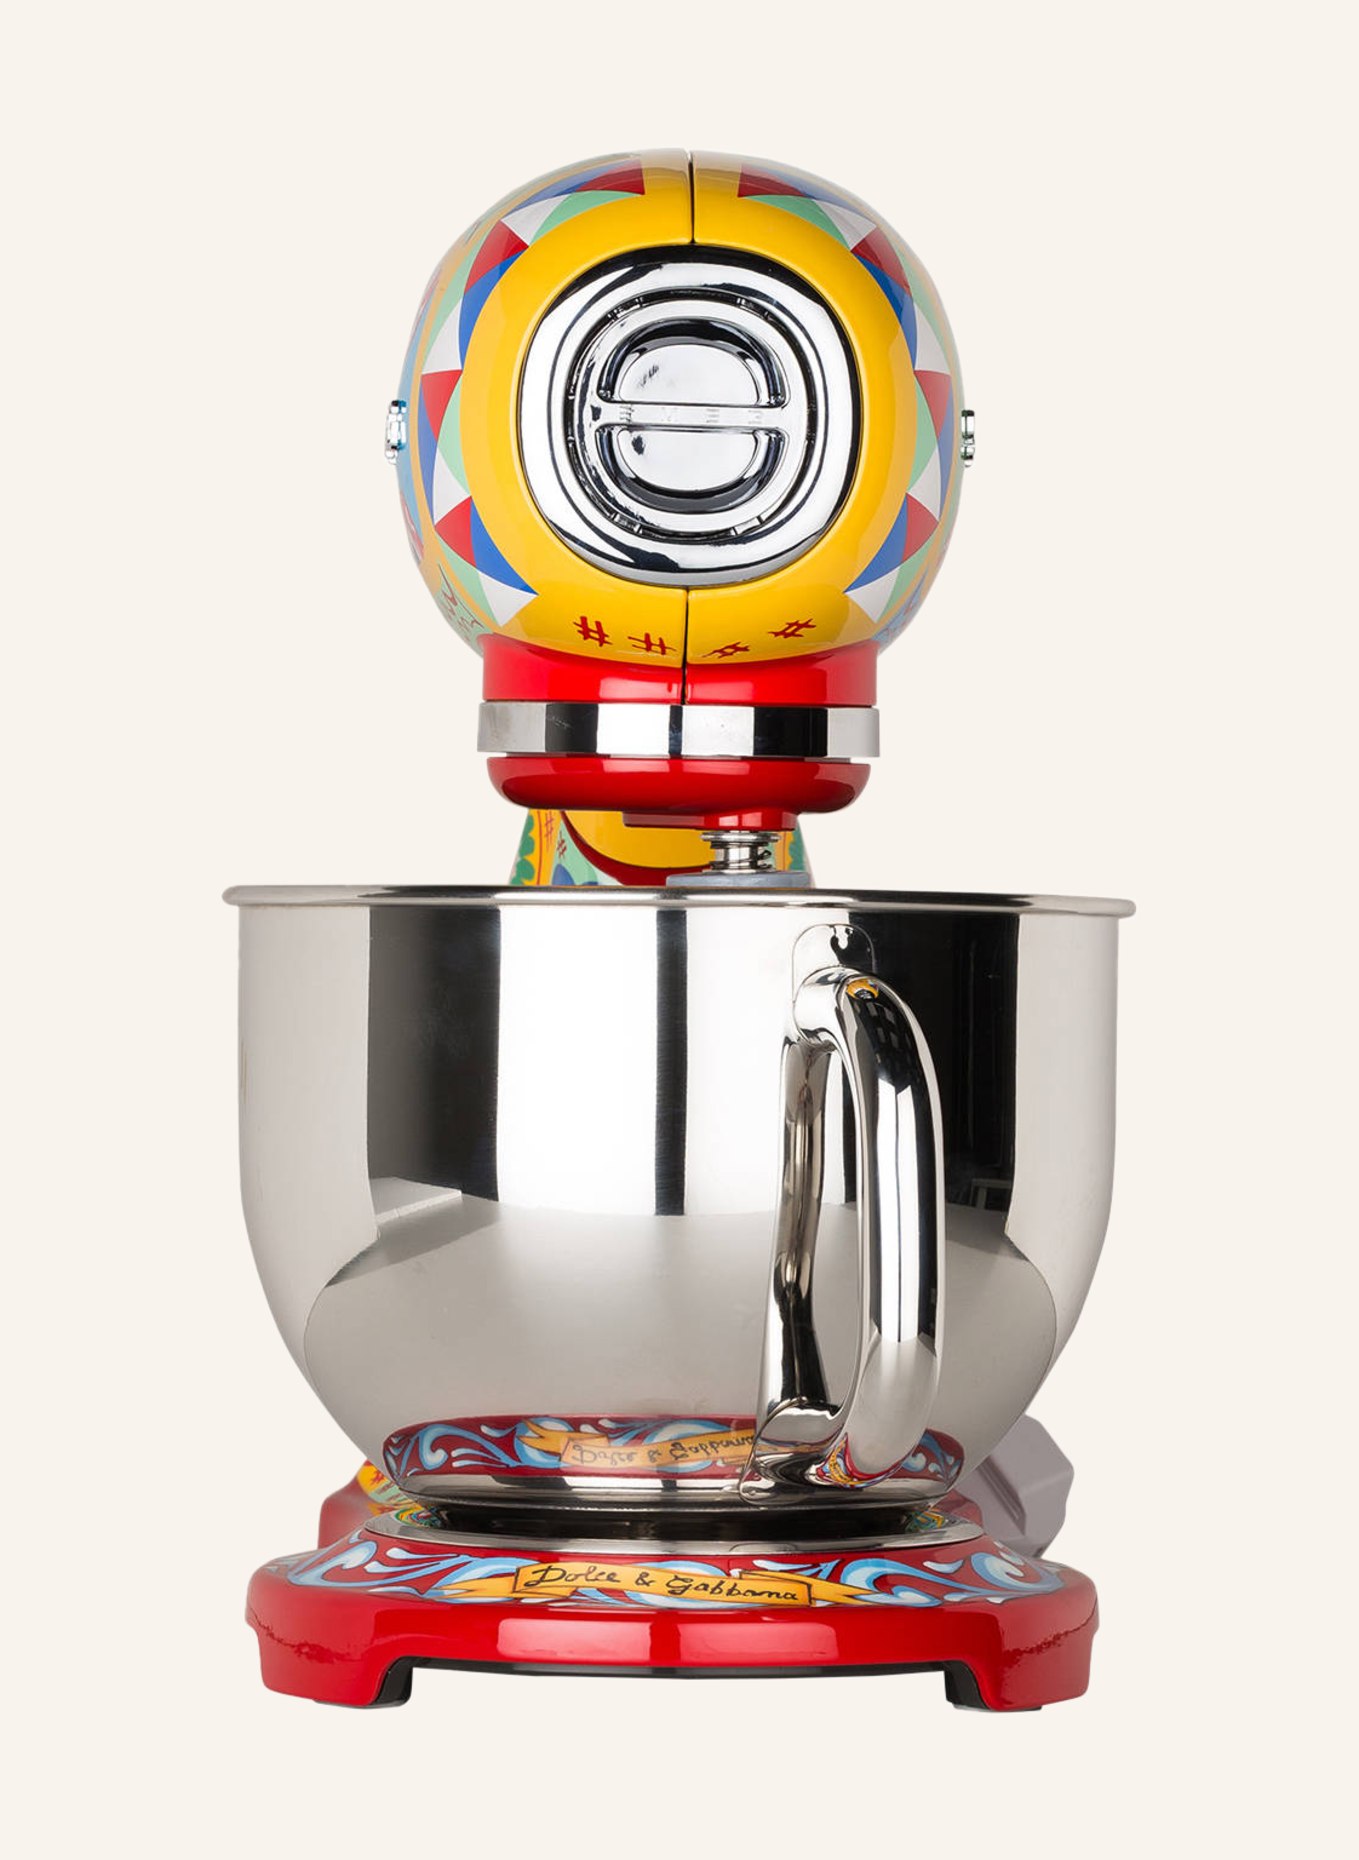 SMEG Robot kuchenny SMF03, Kolor: CZERWONY/ JASNOZIELONY/ JASNONIEBIESKI (Obrazek 3)